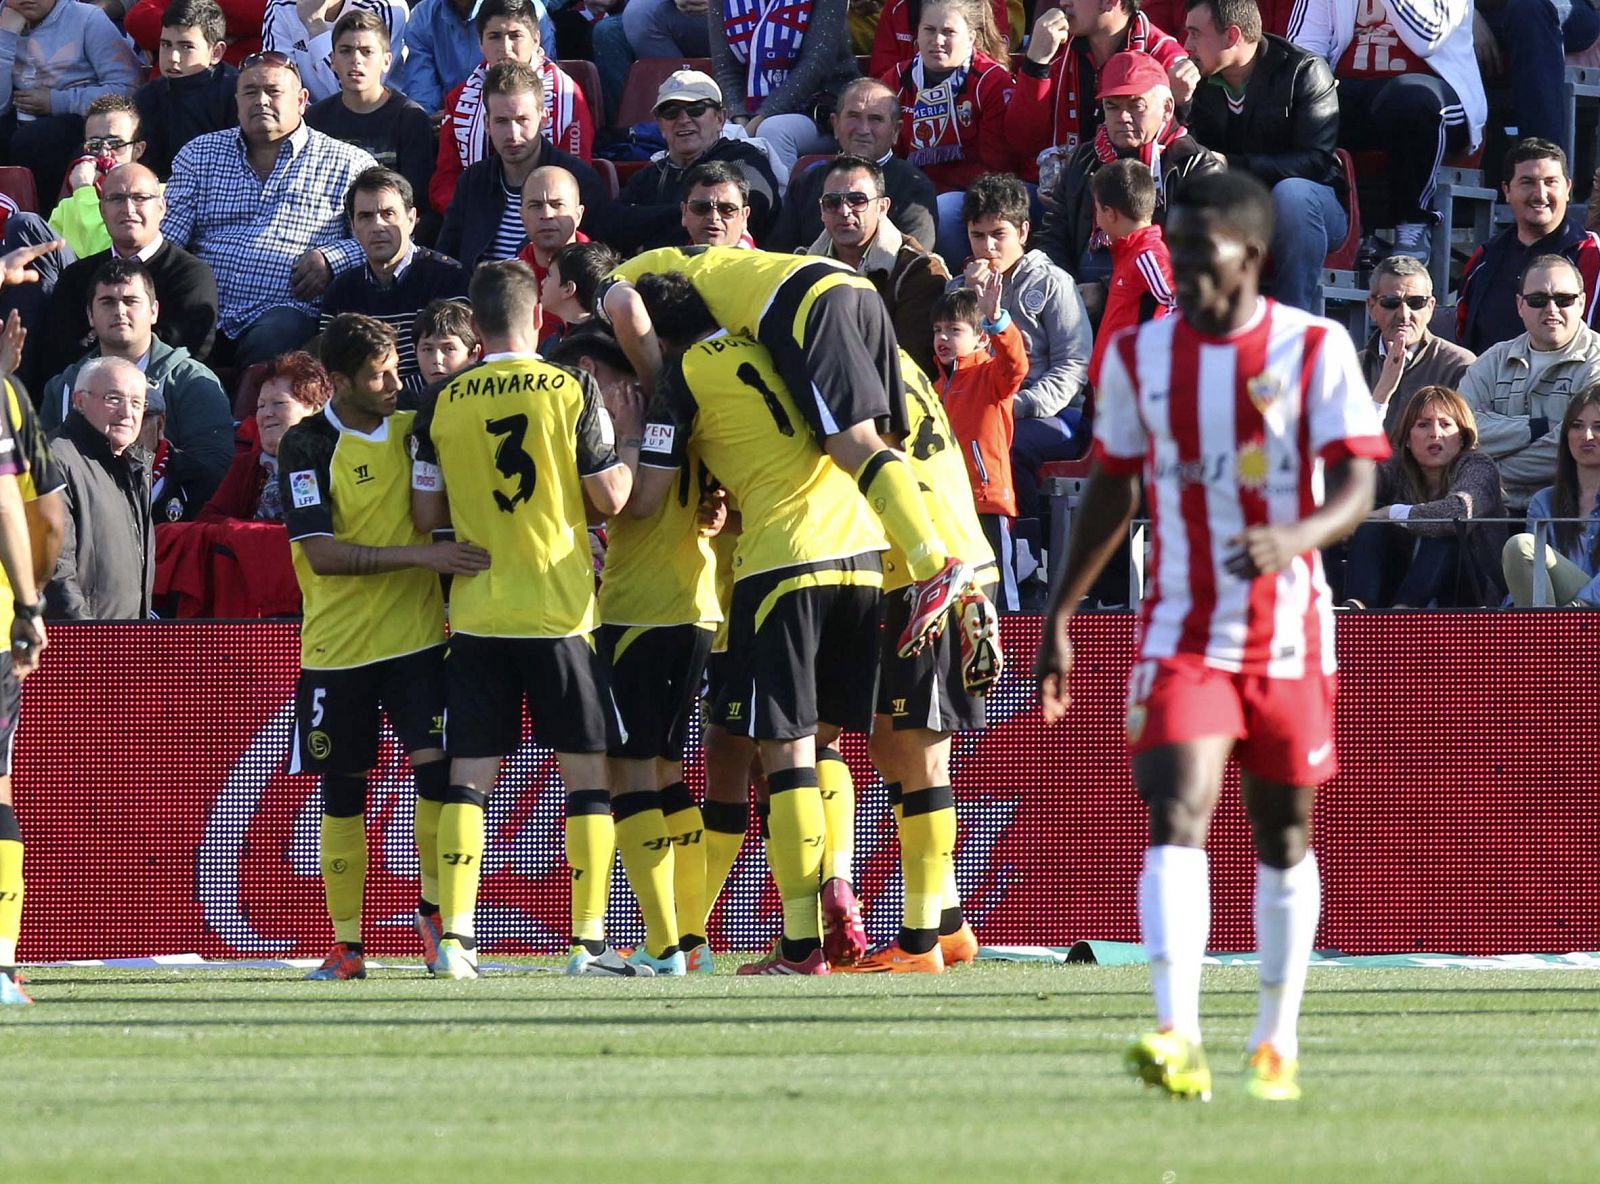 Los jugadores del Sevilla C.F celebran su primer gol ante el Almería.